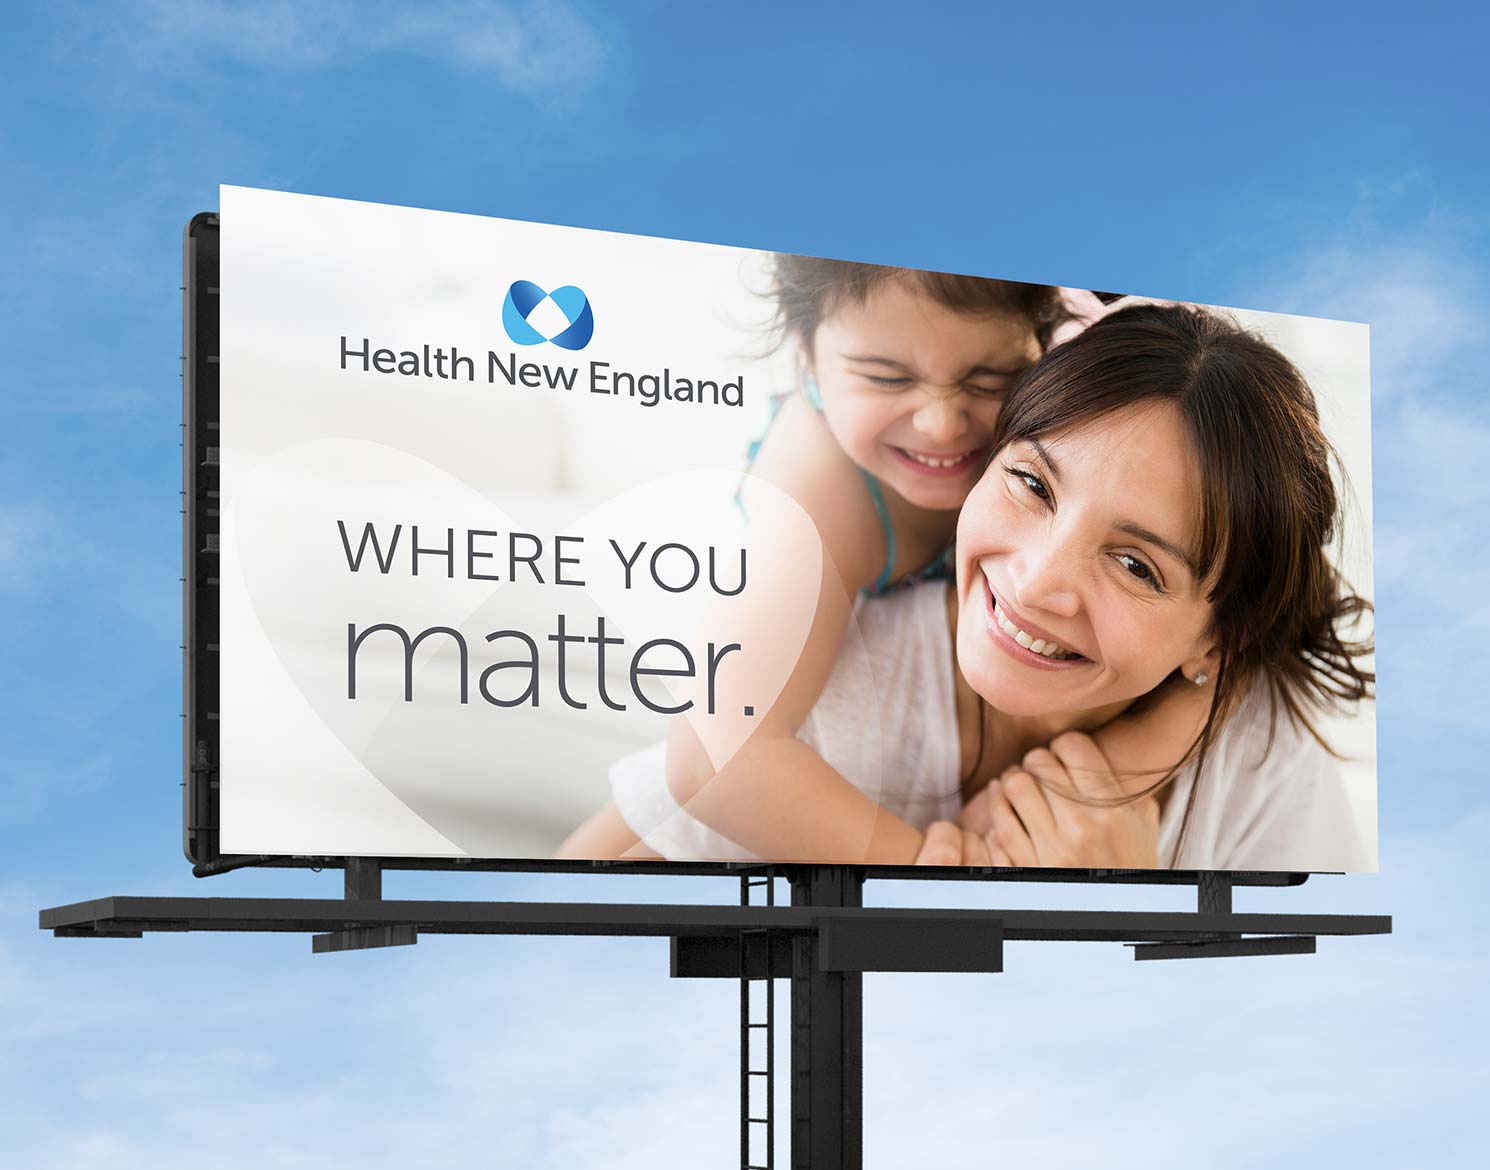 Health New England logo shown on a billboard